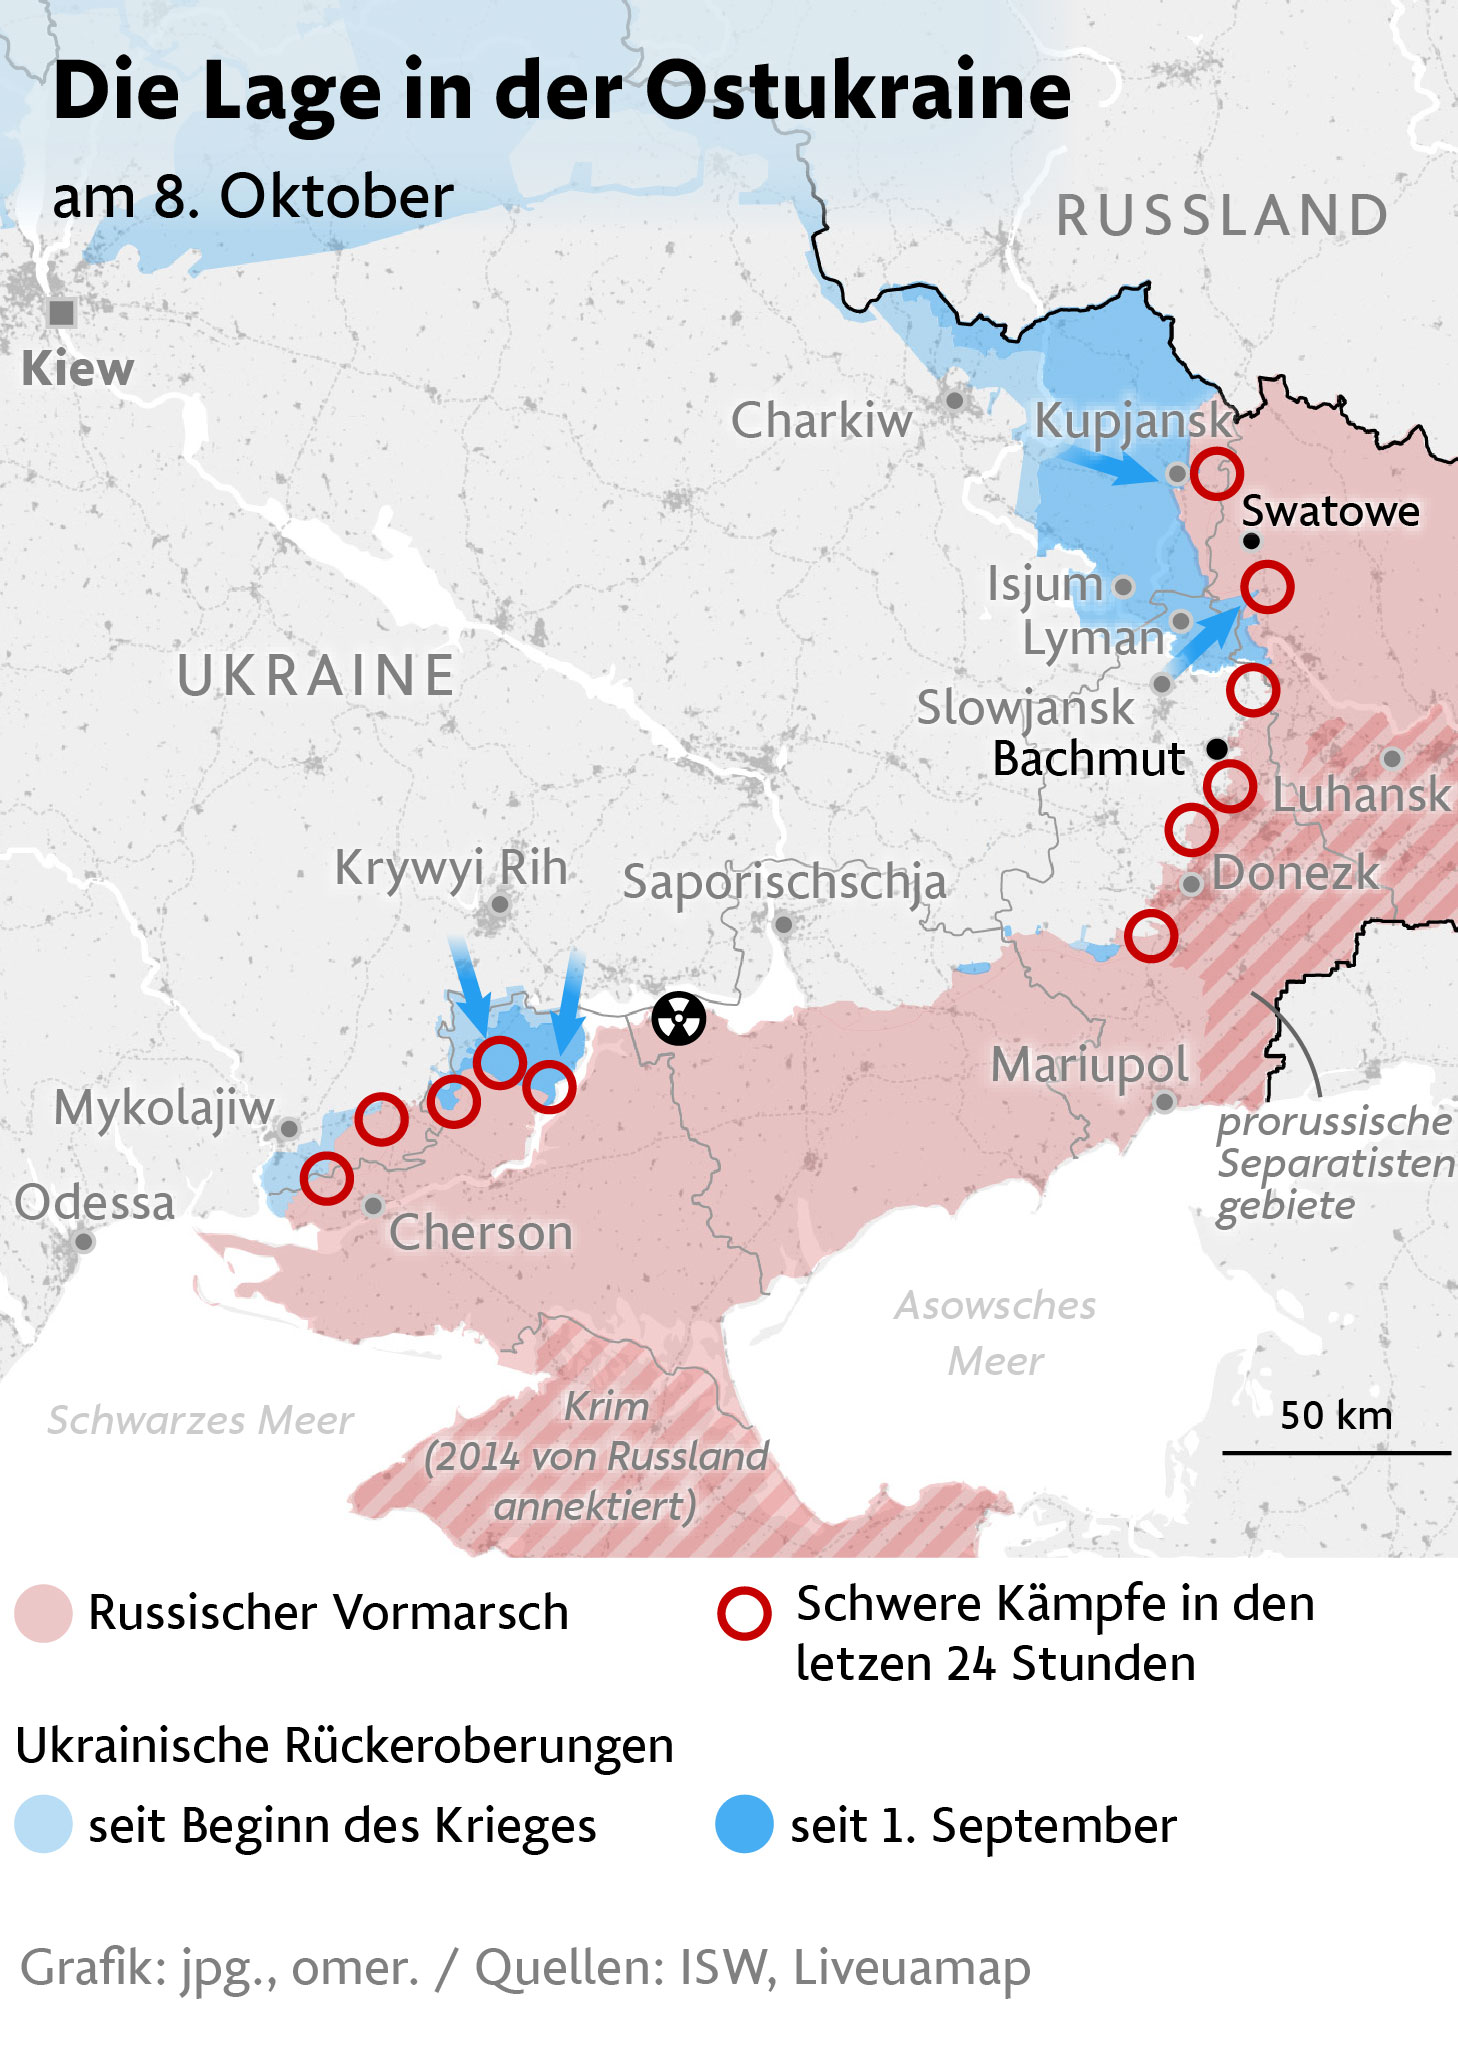 El sitio en Luhansk está bajo control ucraniano.